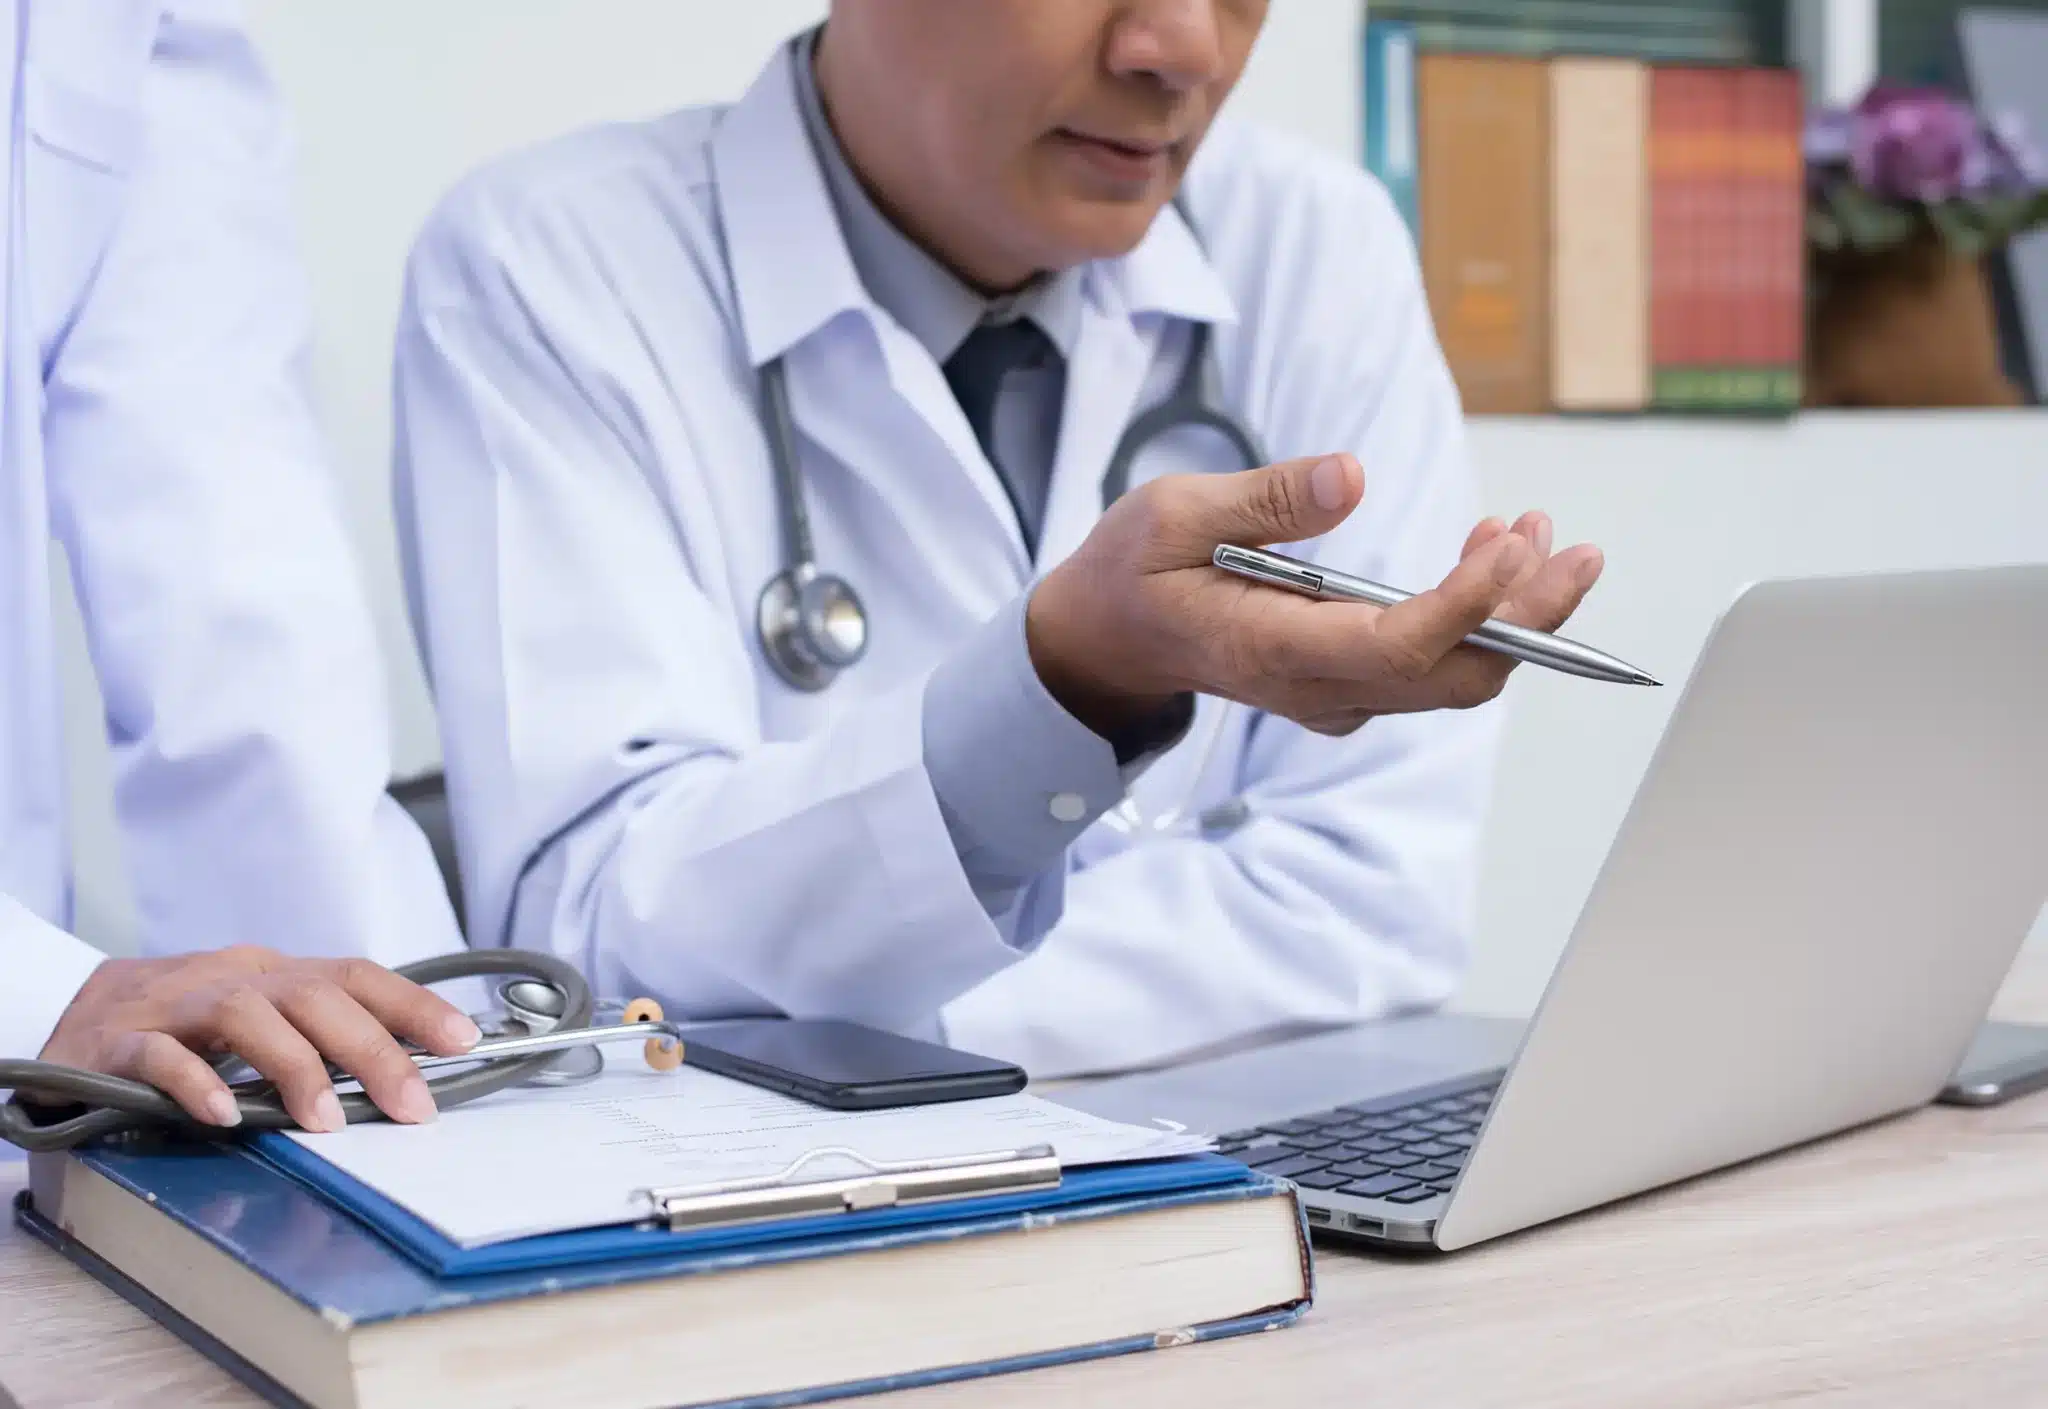 doctors work on a Medicare appeal together at laptop